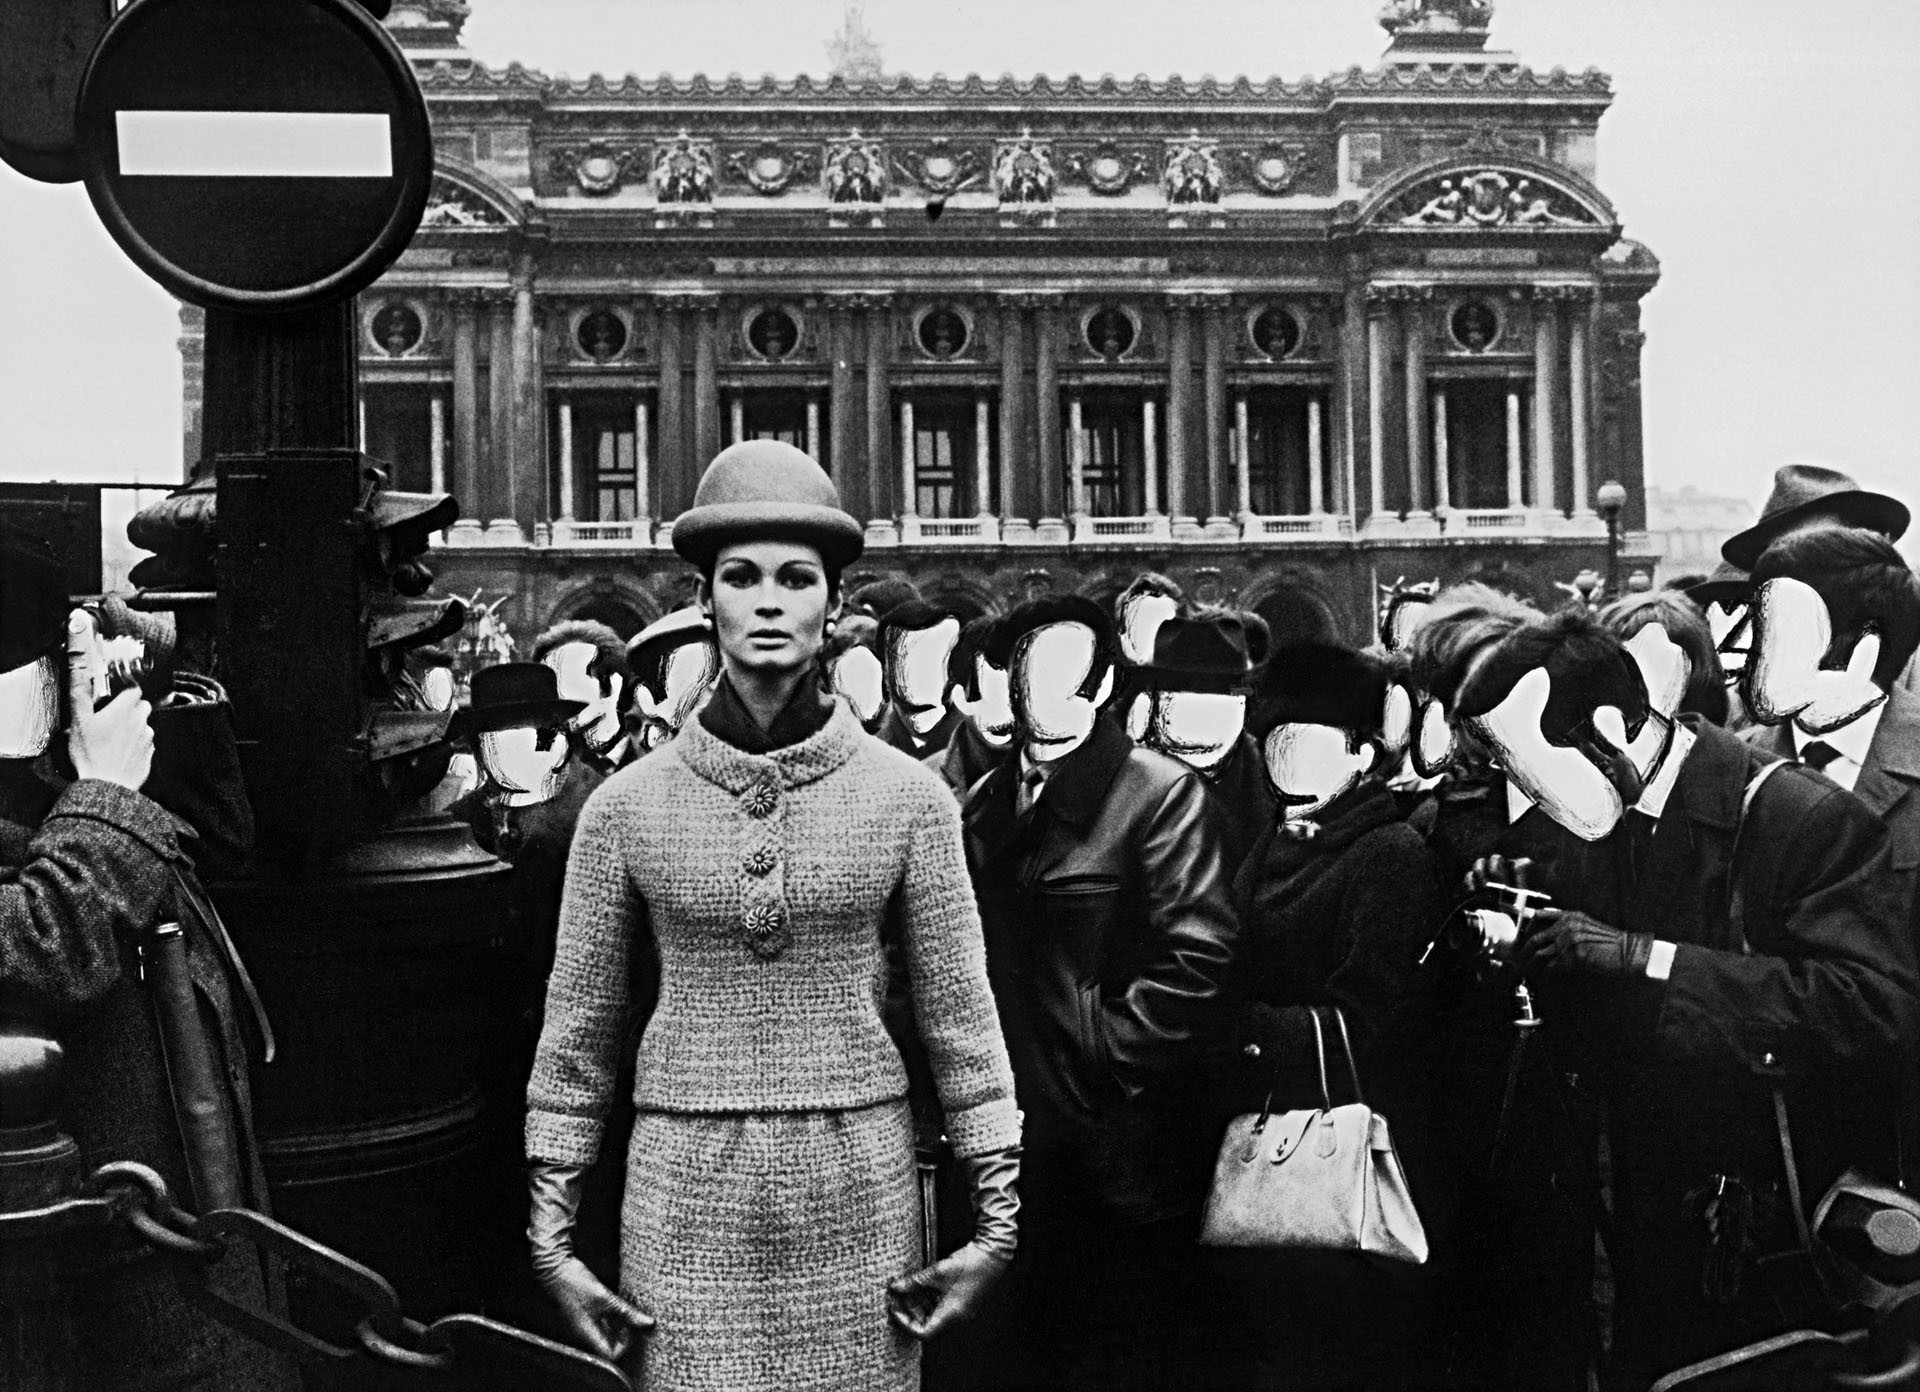 Изабелла и опера, белые лица для журнала Vogue, Париж, 1963. Фотограф Уильям Кляйн